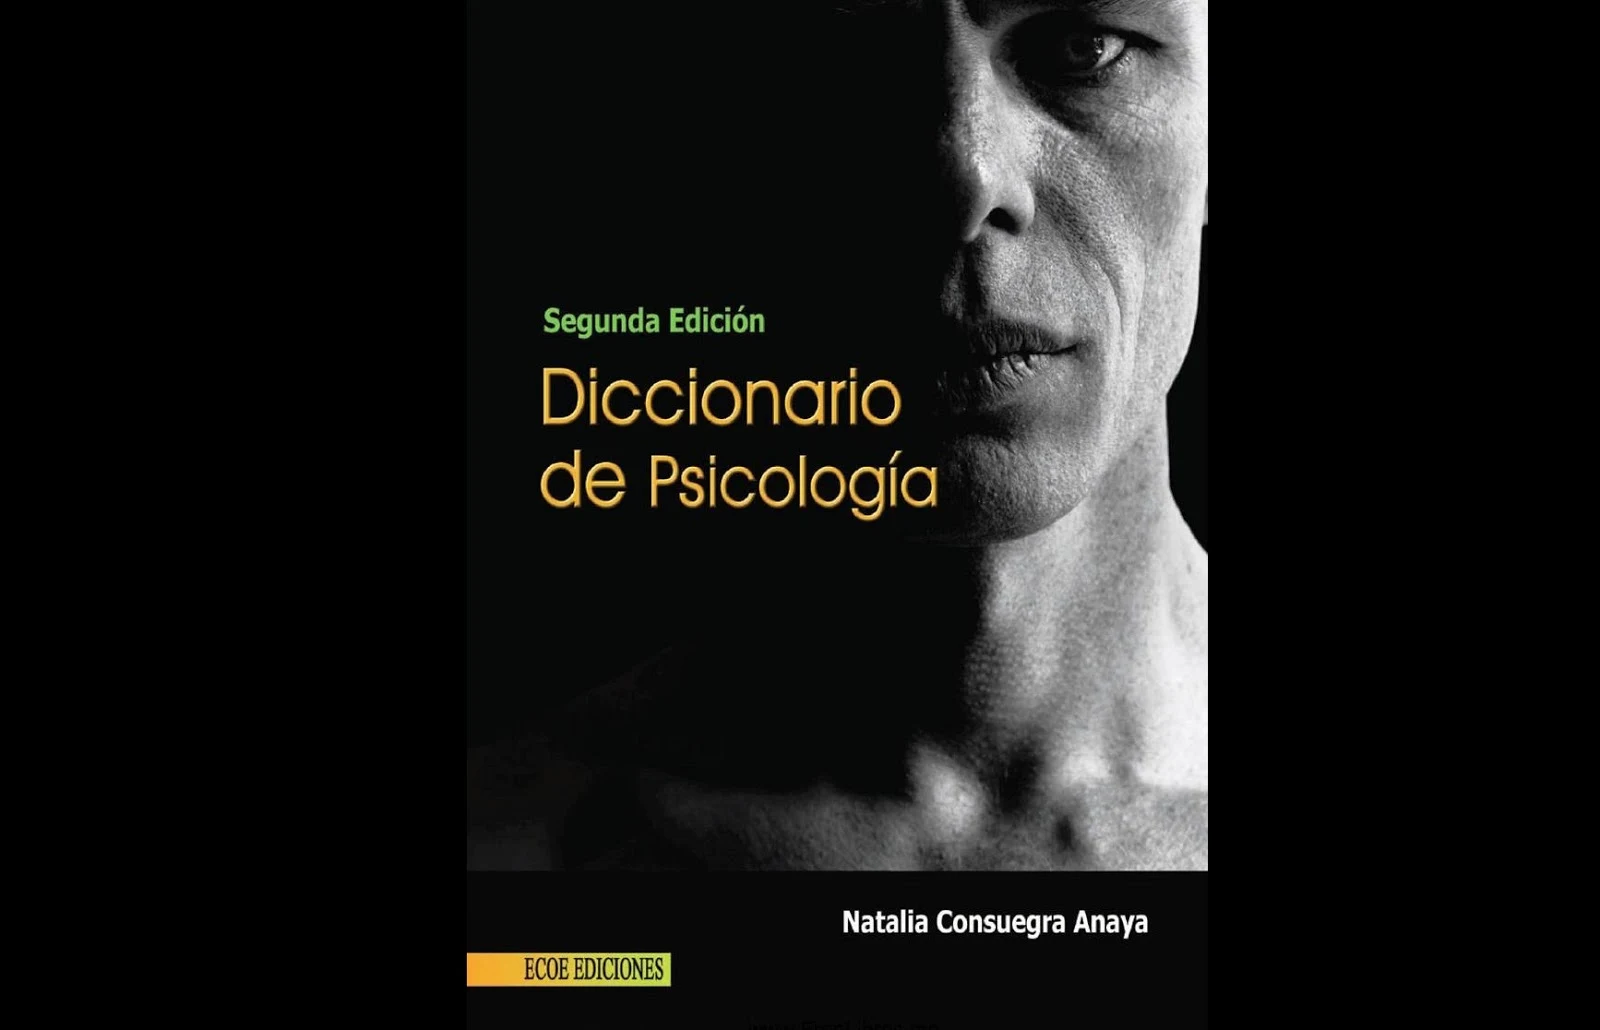 Diccionario de psicología. Natalia Consuegra Anaya. PDF